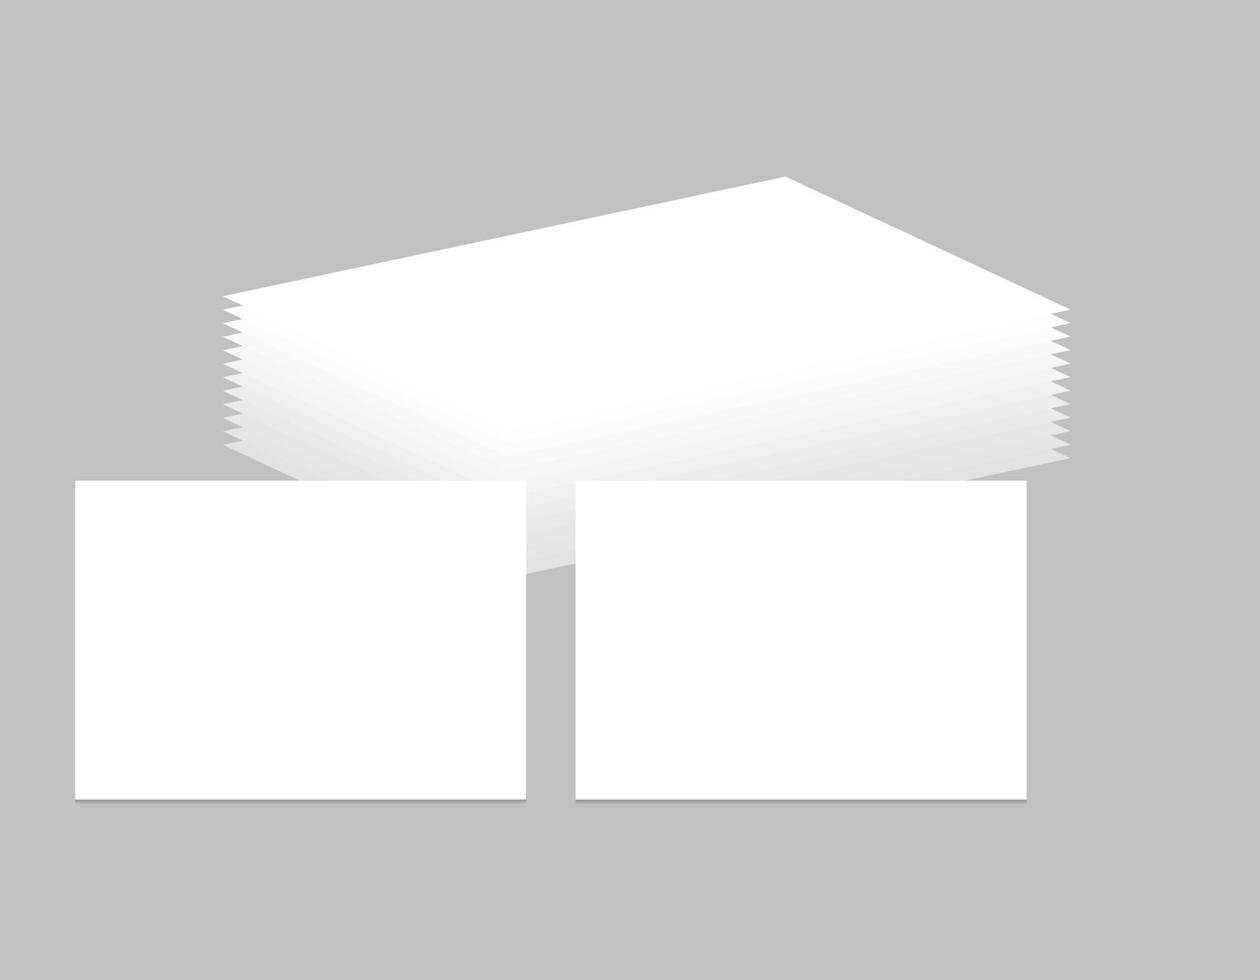 2 cartes de visite vierges pile de pages maquette papier blanc imprimable toile présentation de document d'identité de marque vecteur